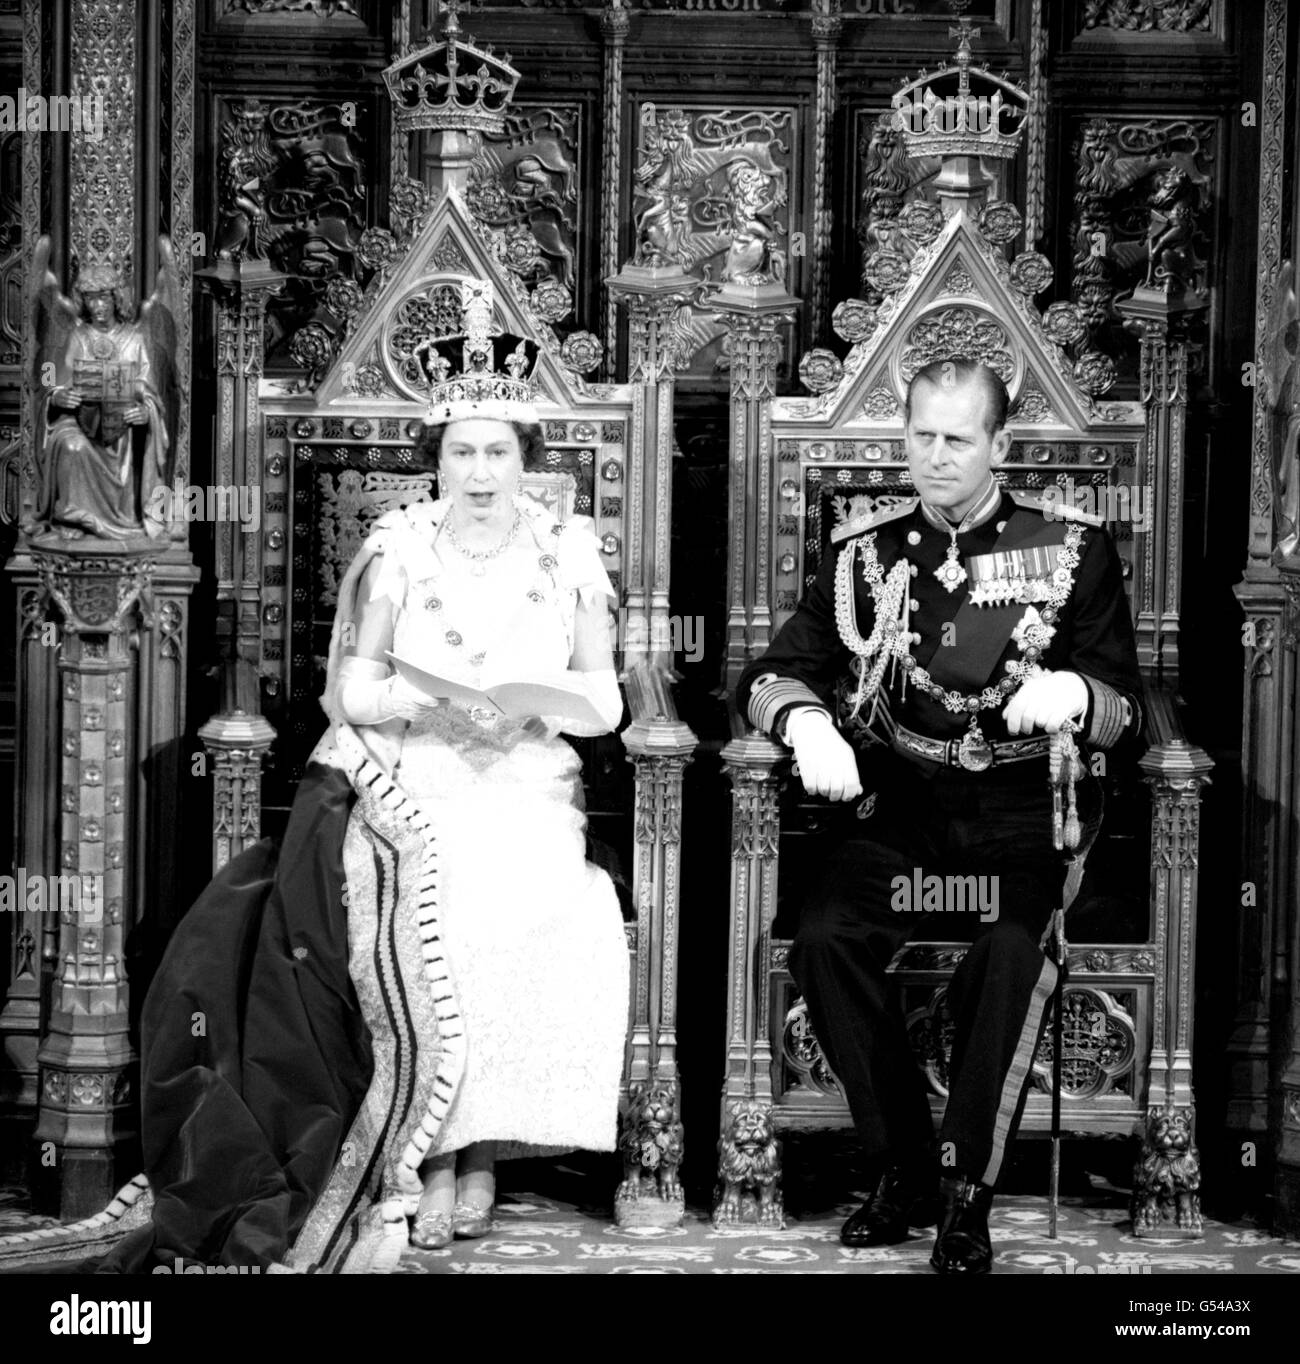 La reine Elizabeth II et le duc d'Édimbourg lors de la cérémonie d'ouverture du Parlement à la Chambre des Lords. Banque D'Images